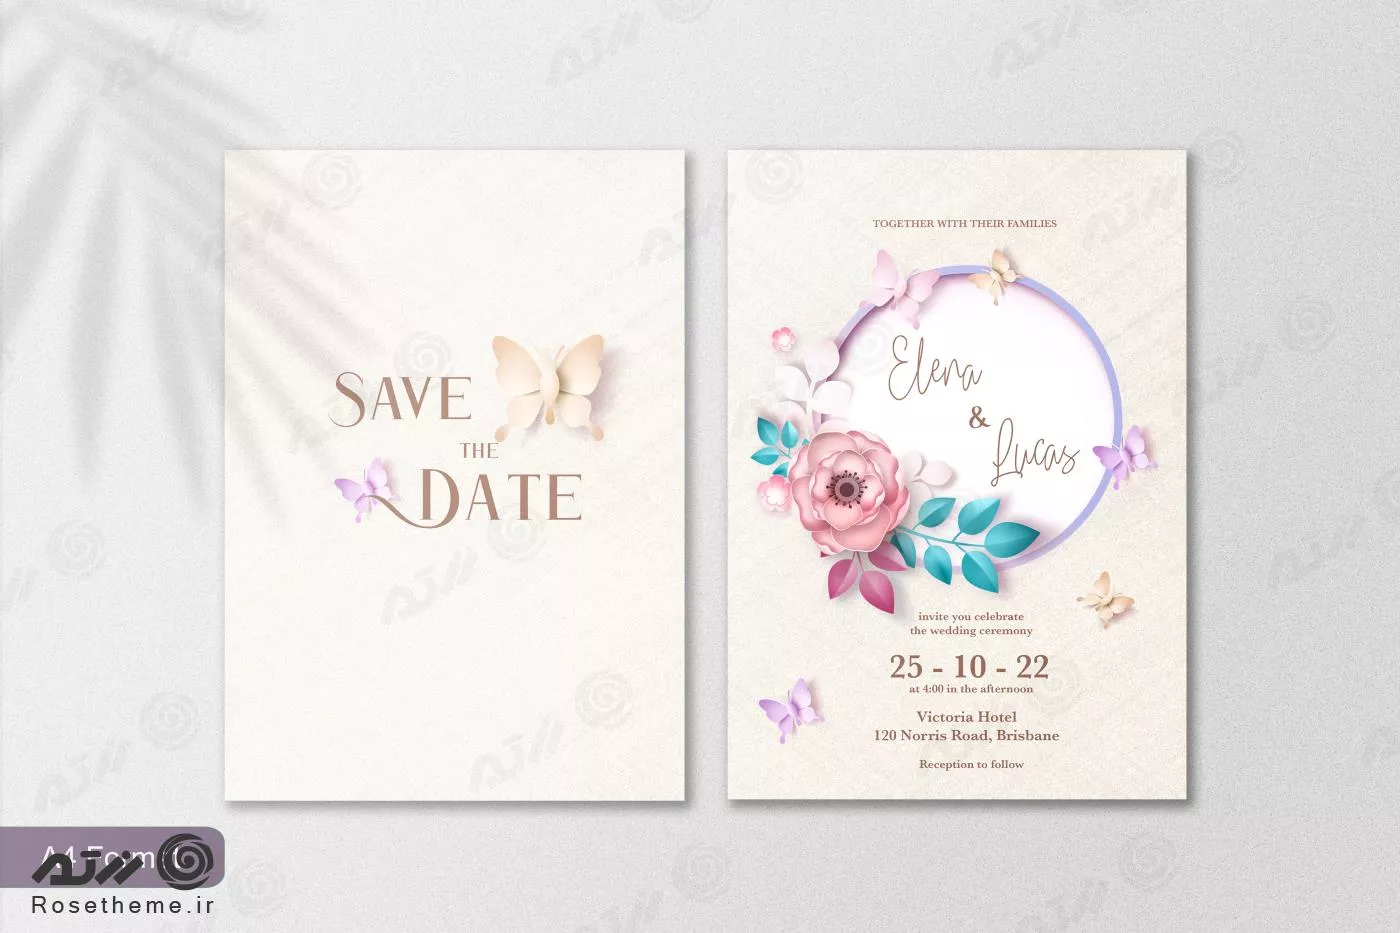 قالب فتوشاپ کارت دعوت عروسی با زمینه سفید و روشن به همراه پروانه و قاب گرد گل رز و گلبرگ فایل psd لایه باز 21368